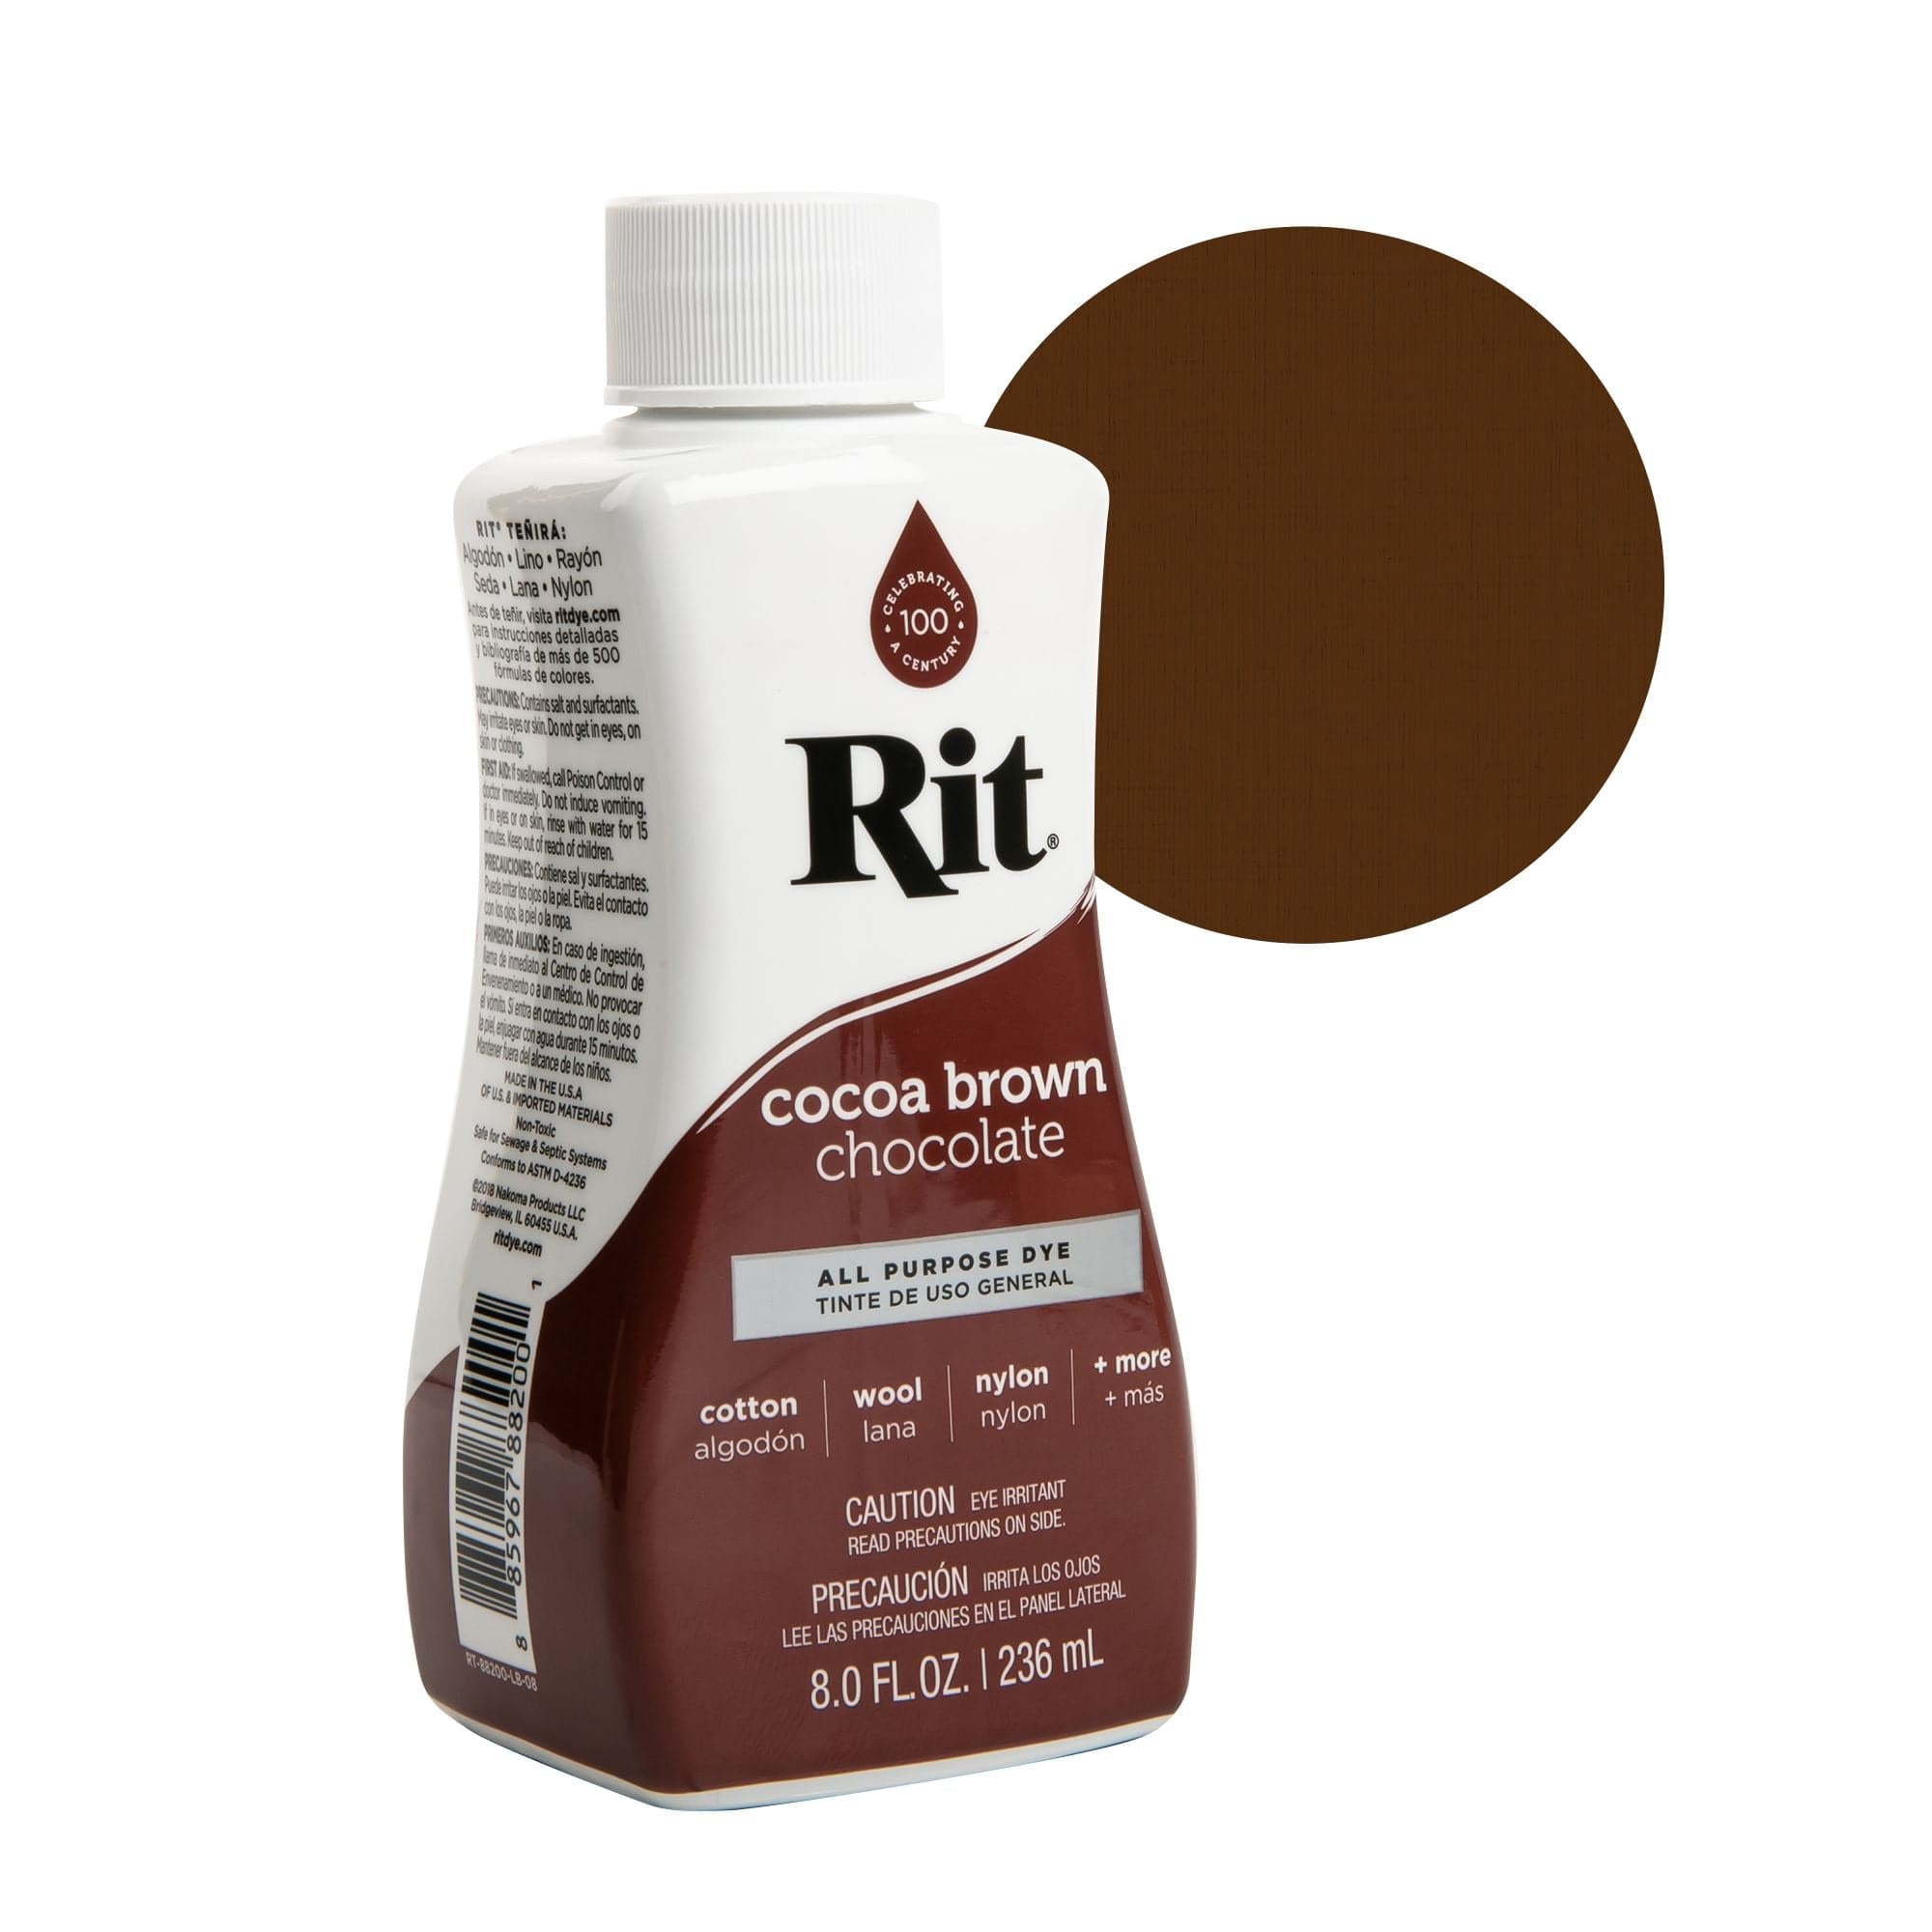 Rit All Purpose Dye, Cocoa Brown Chocolate - 8.0 fl oz